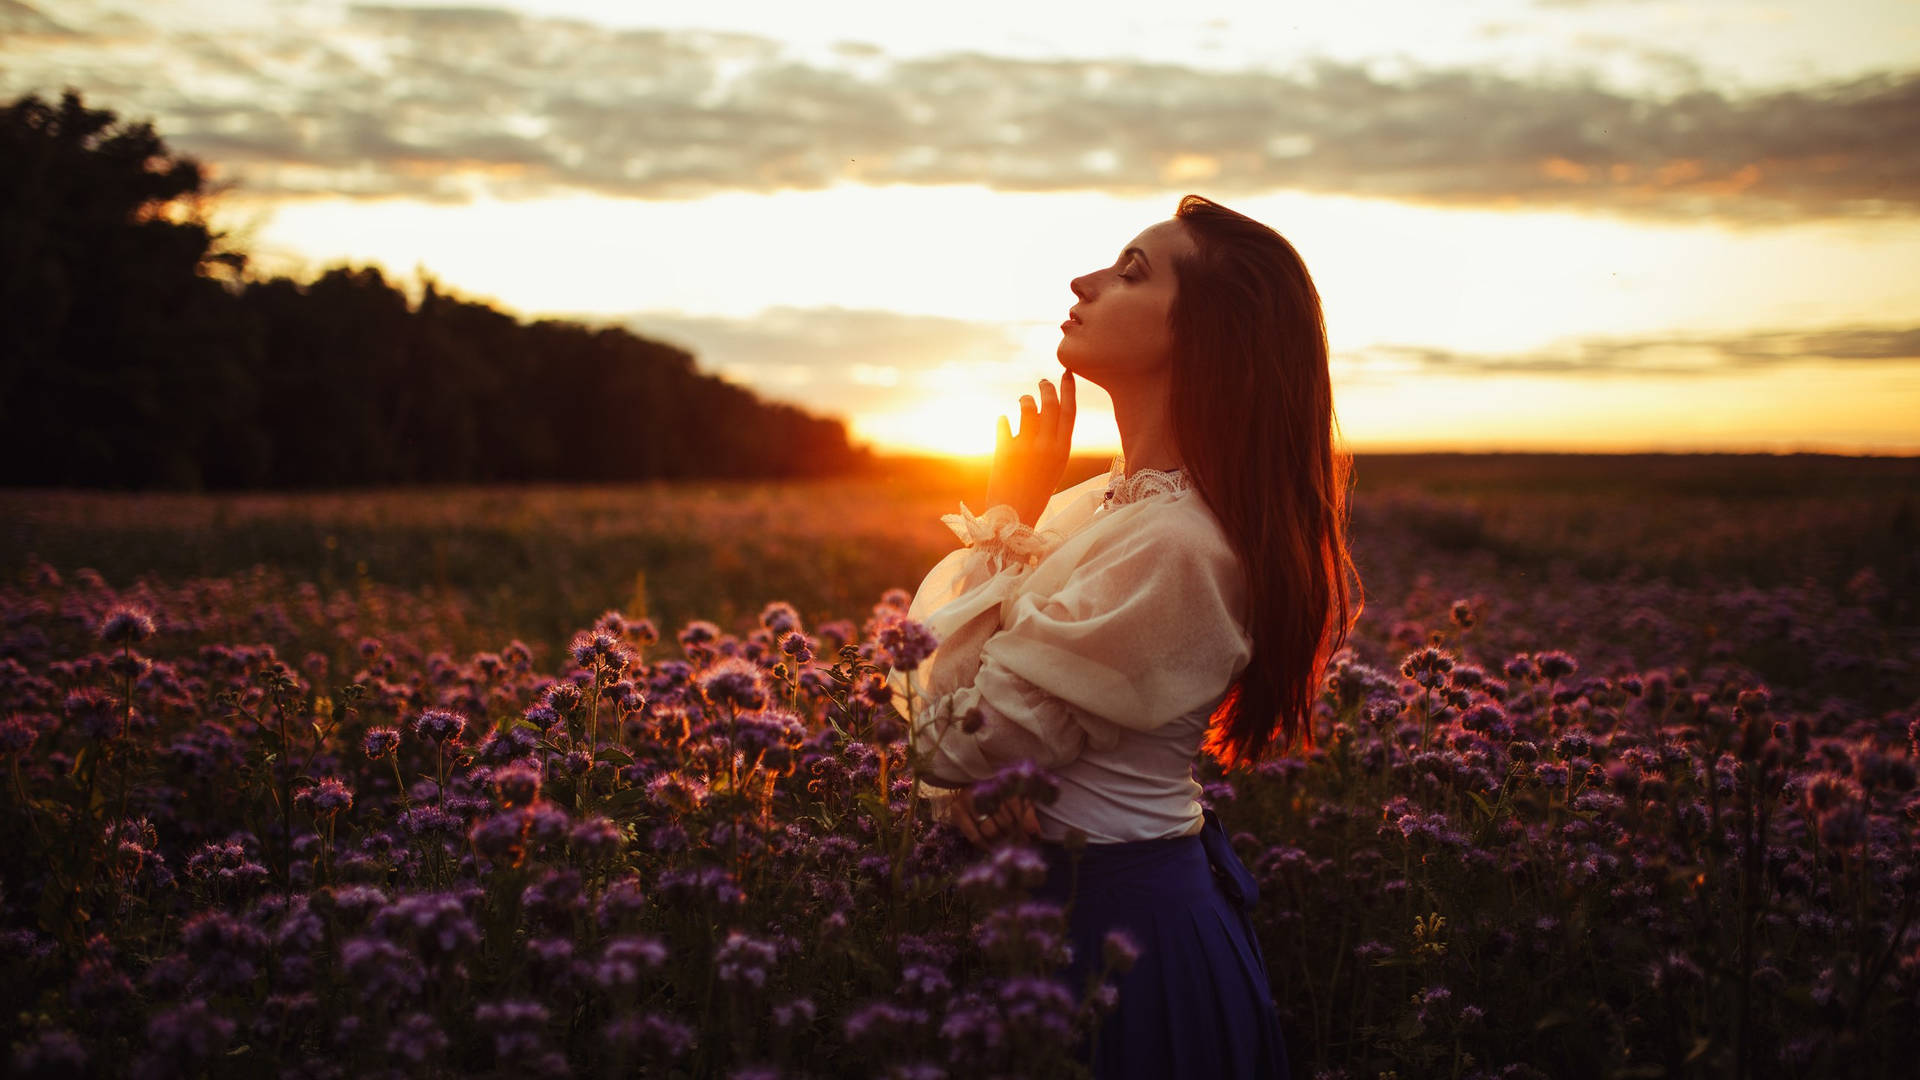 Ksenia Kokoreva Women Over Amber Sunset Picture